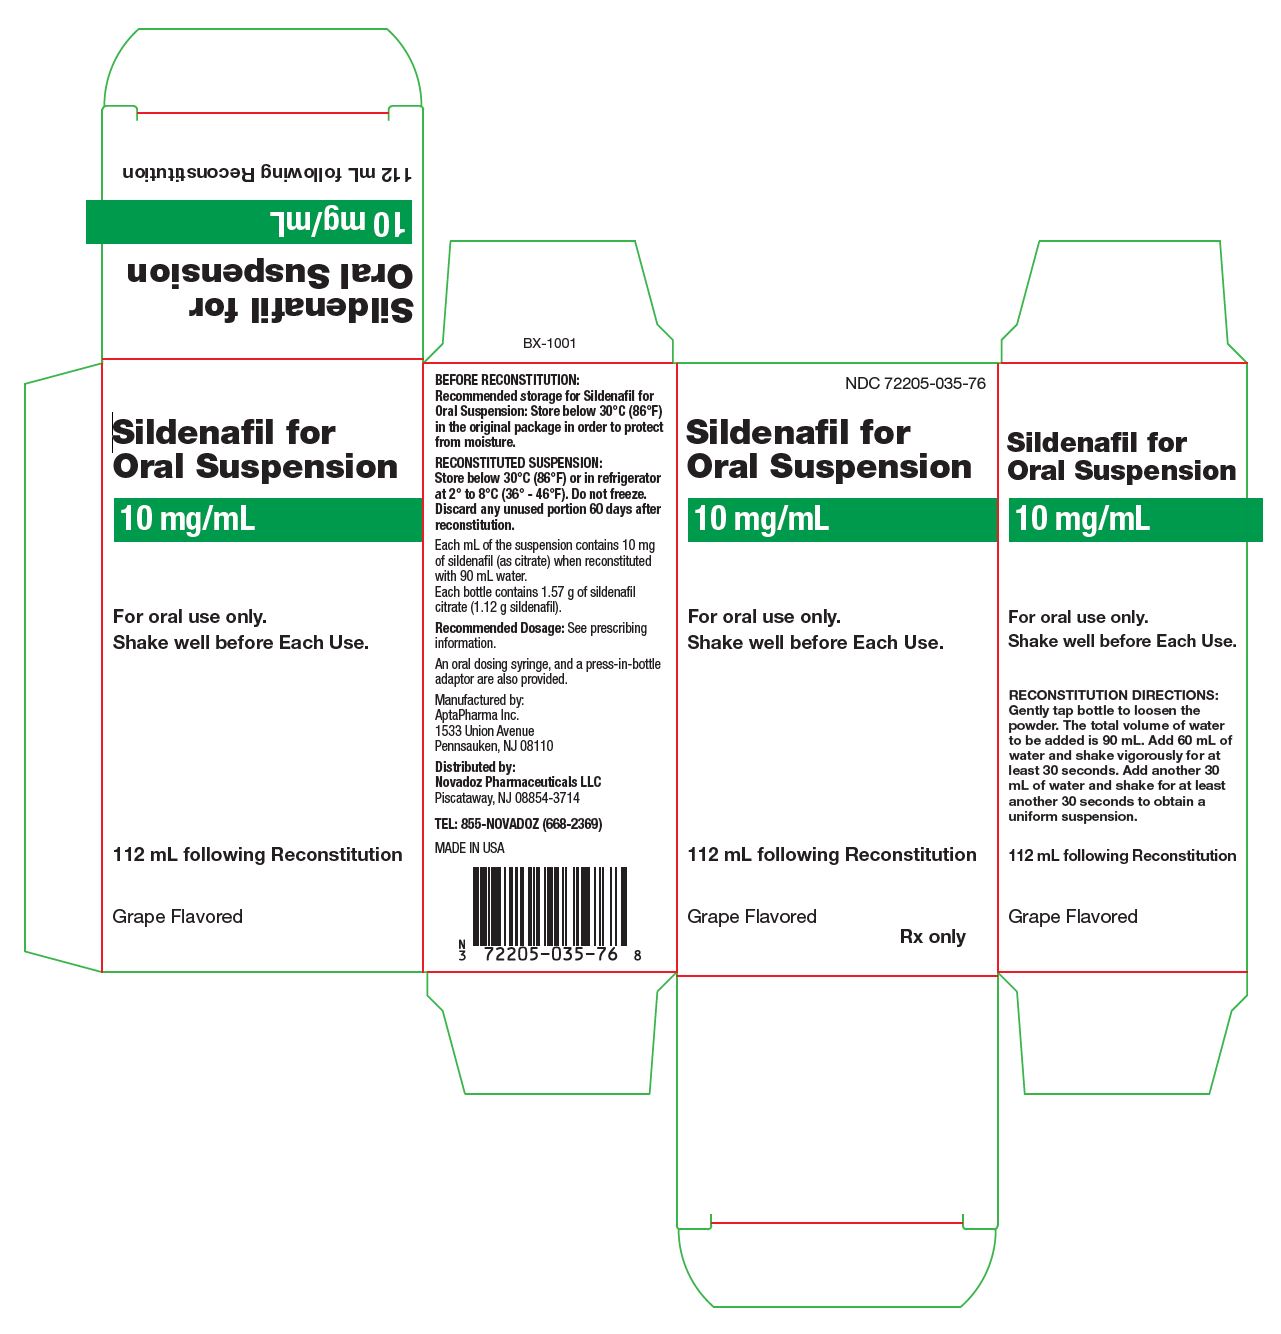 PRINCIPAL DISPLAY PANEL - 10 mg/mL Bottle Carton